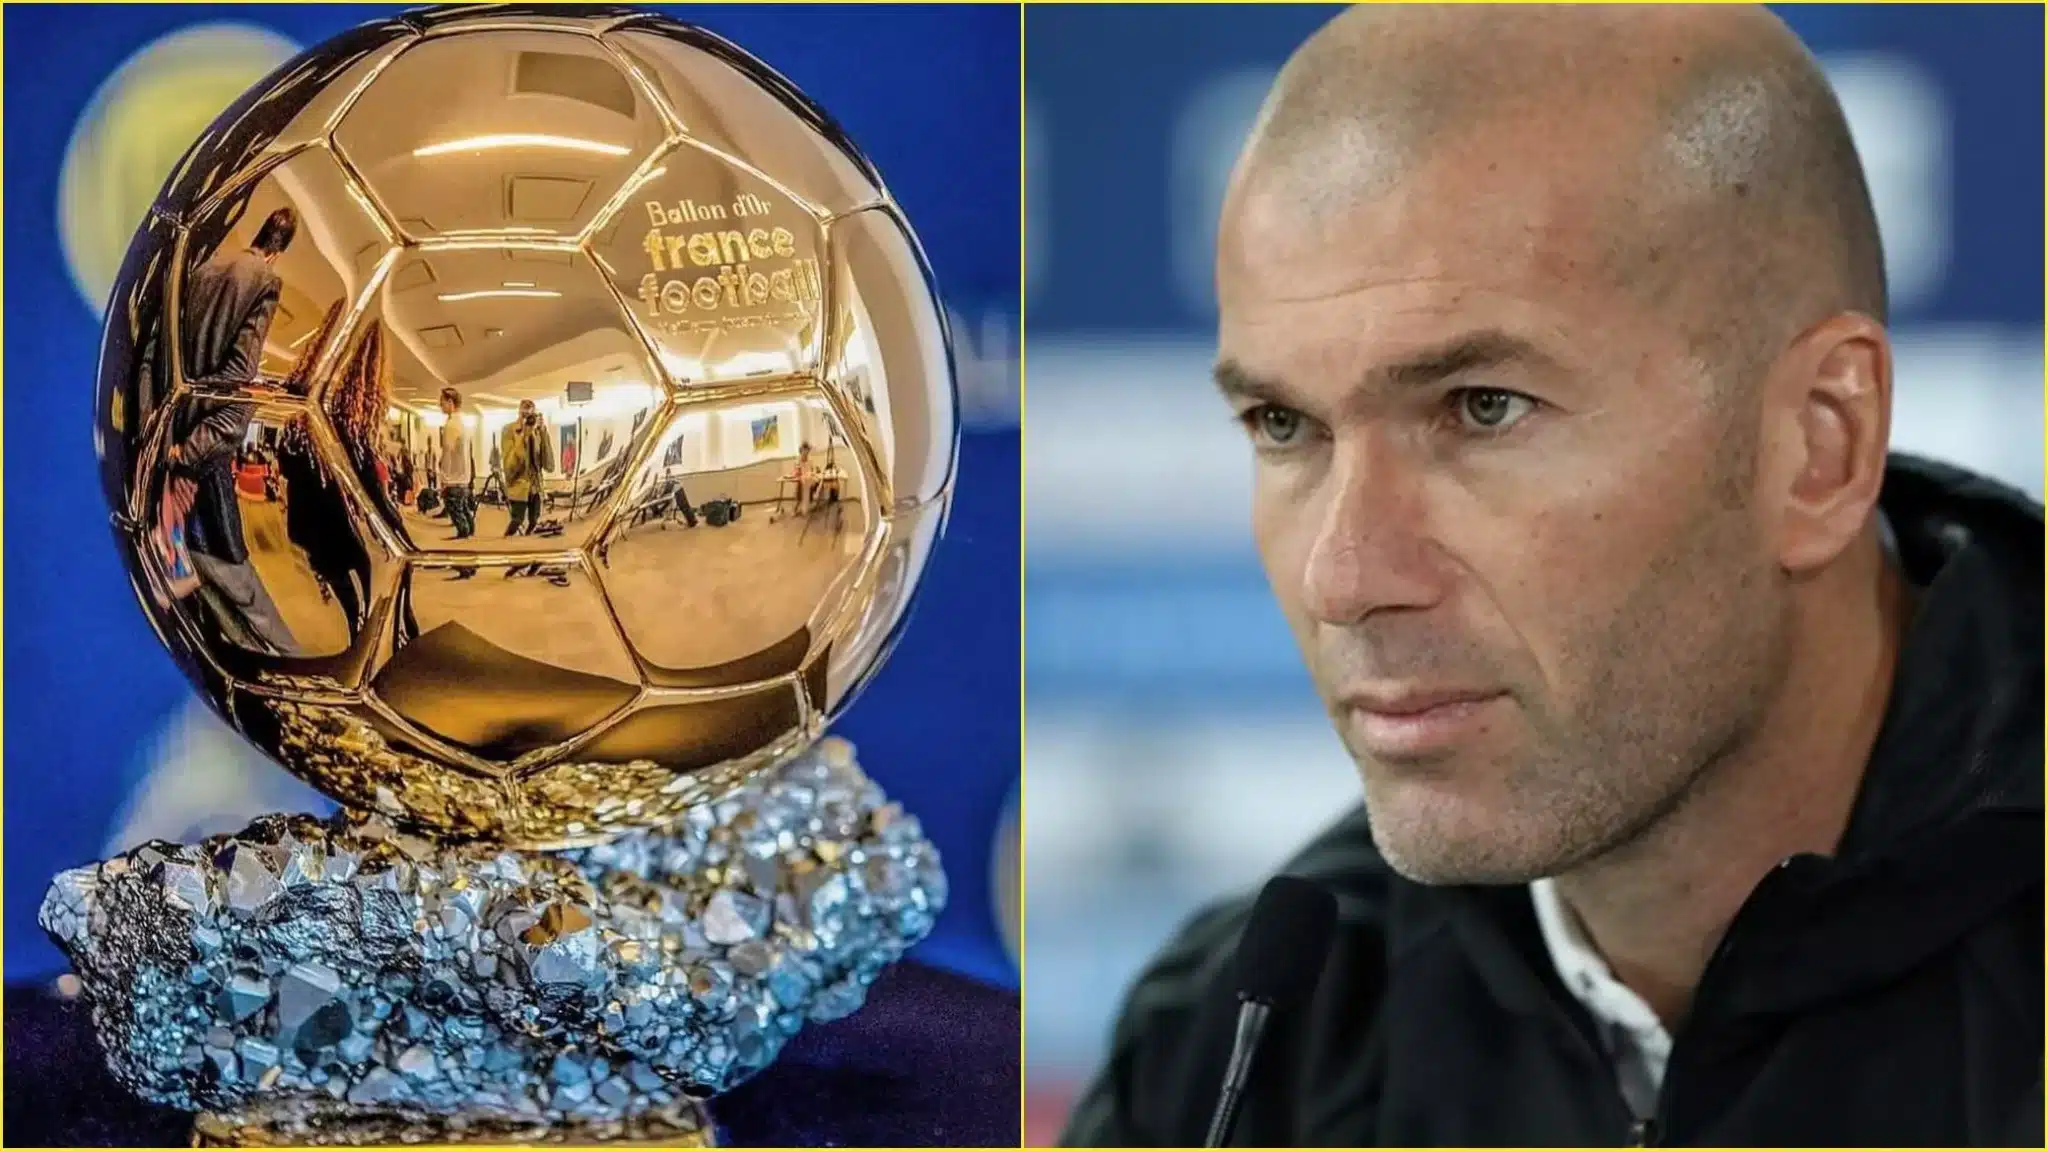 La sortie fracassante de Zidane : «Il gagnera beaucoup de ballons d’or»